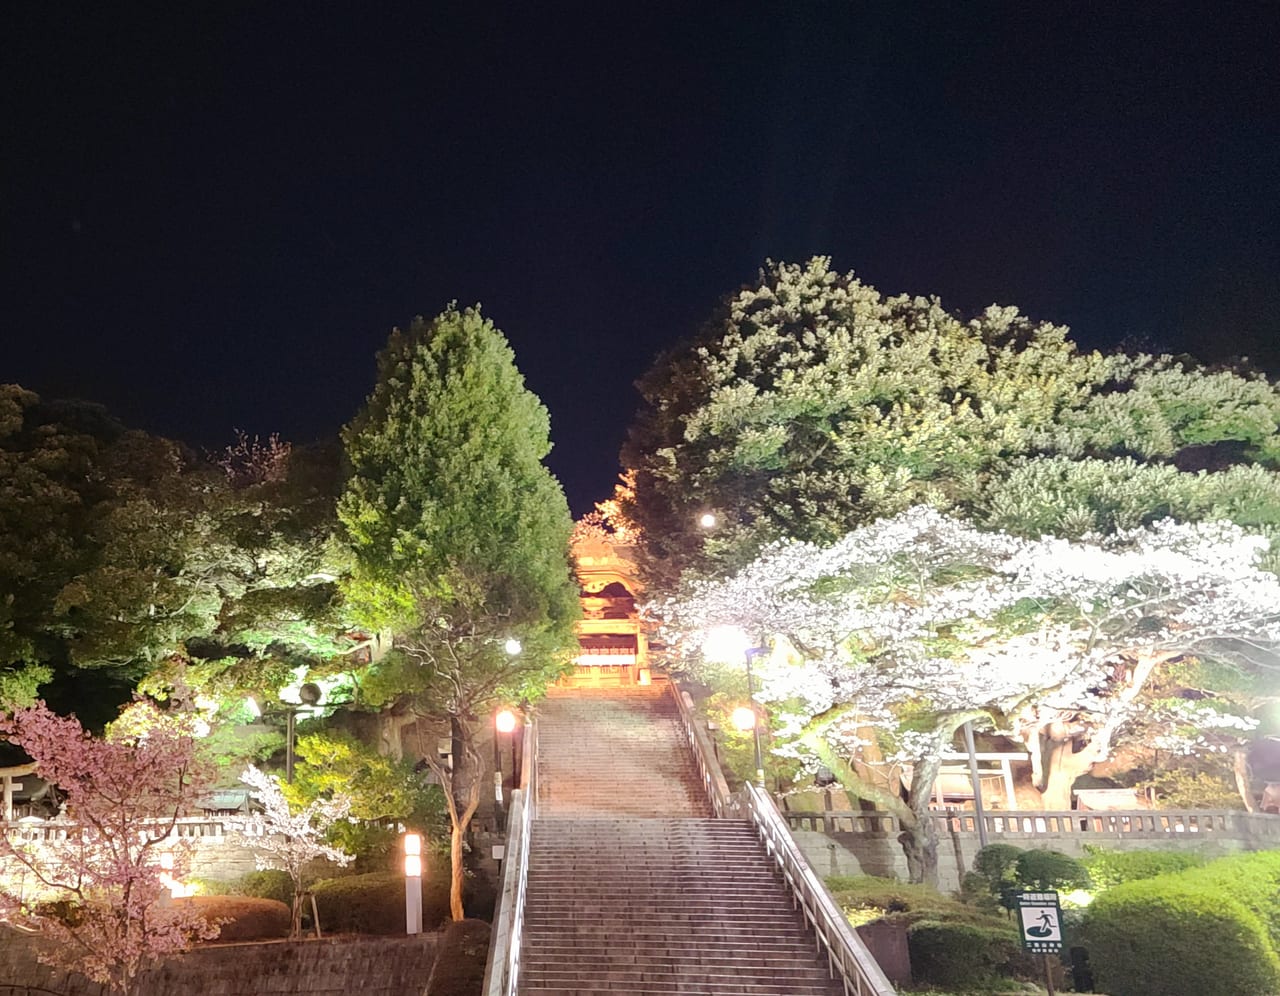 宇都宮市 宇都宮二荒山神社がライトアップ 幻想的な桜が夜空に浮かぶ 3 27 4 11まで 号外net 宇都宮市